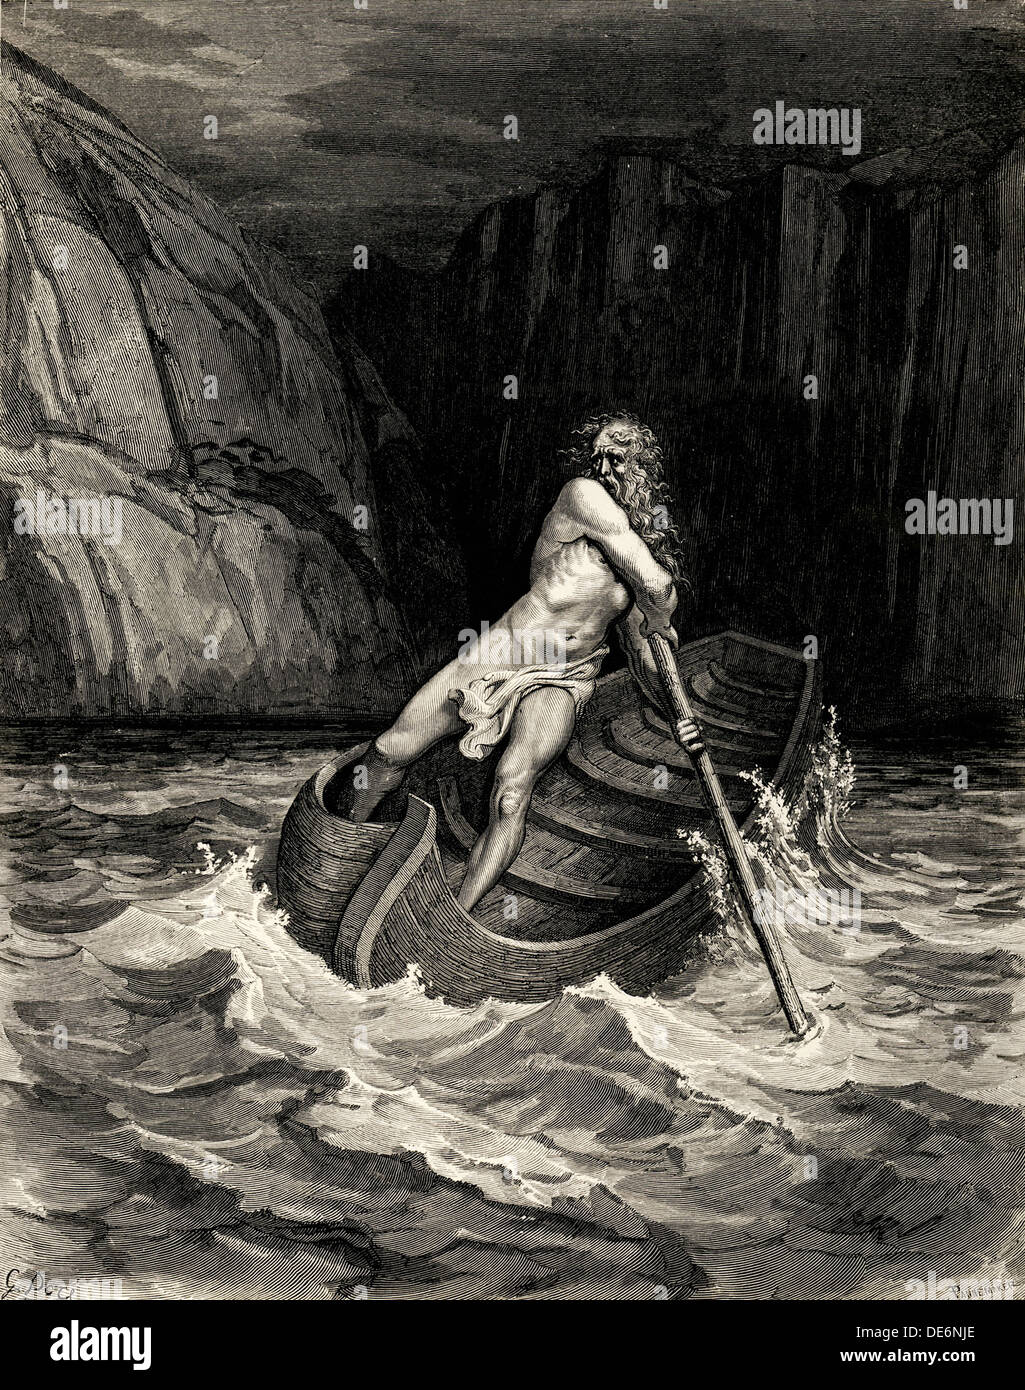 Arrivo di Caronte. Illustrazione della Divina Commedia di Dante Alighieri, 1857. Artista: Doré Gustave (1832-1883) Foto Stock